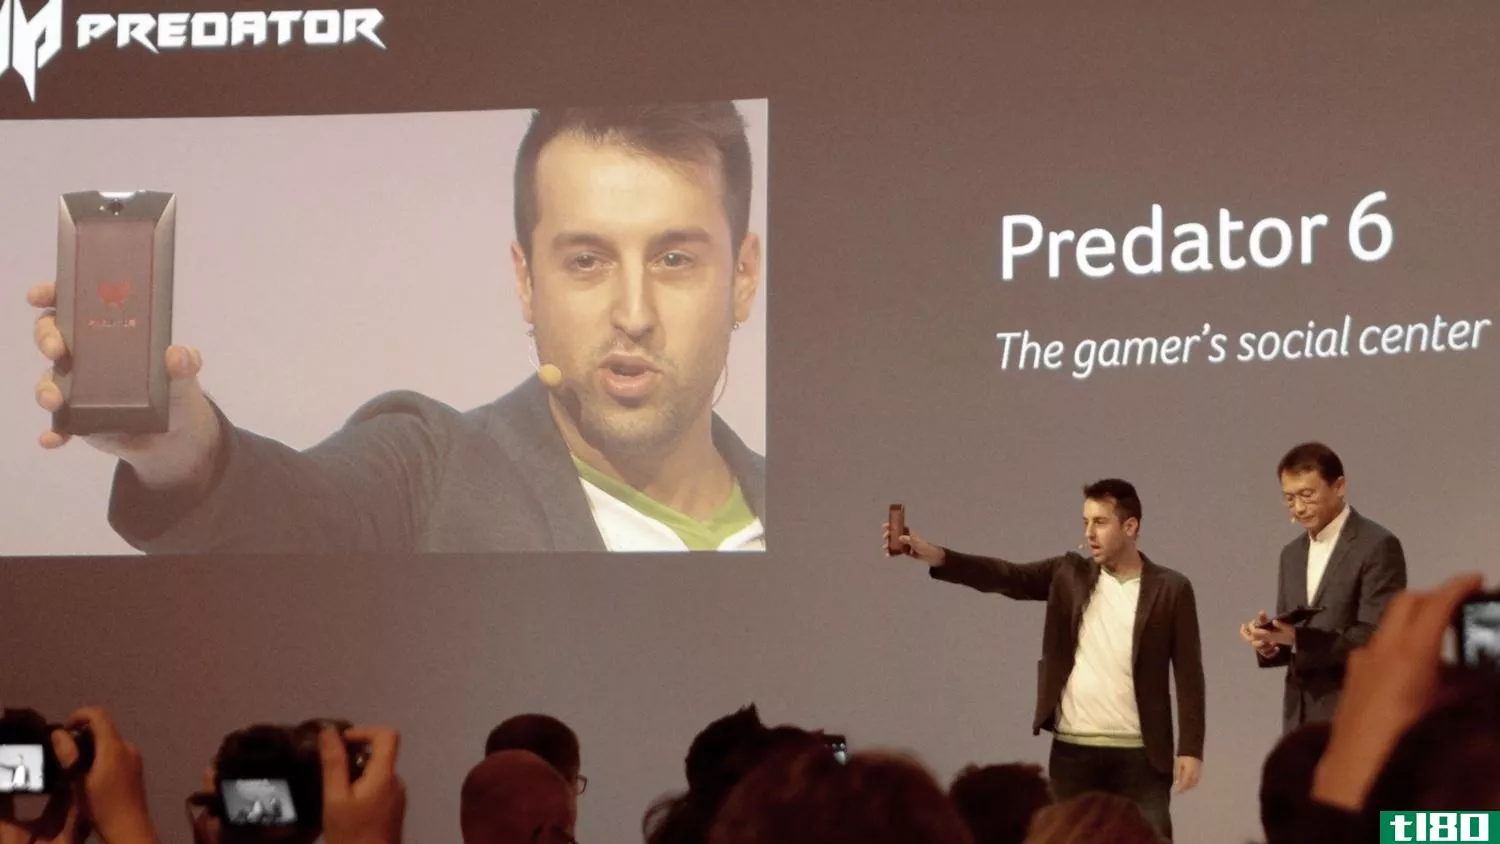 宏碁的predator 6是一款10核智能手机，专为游戏玩家打造